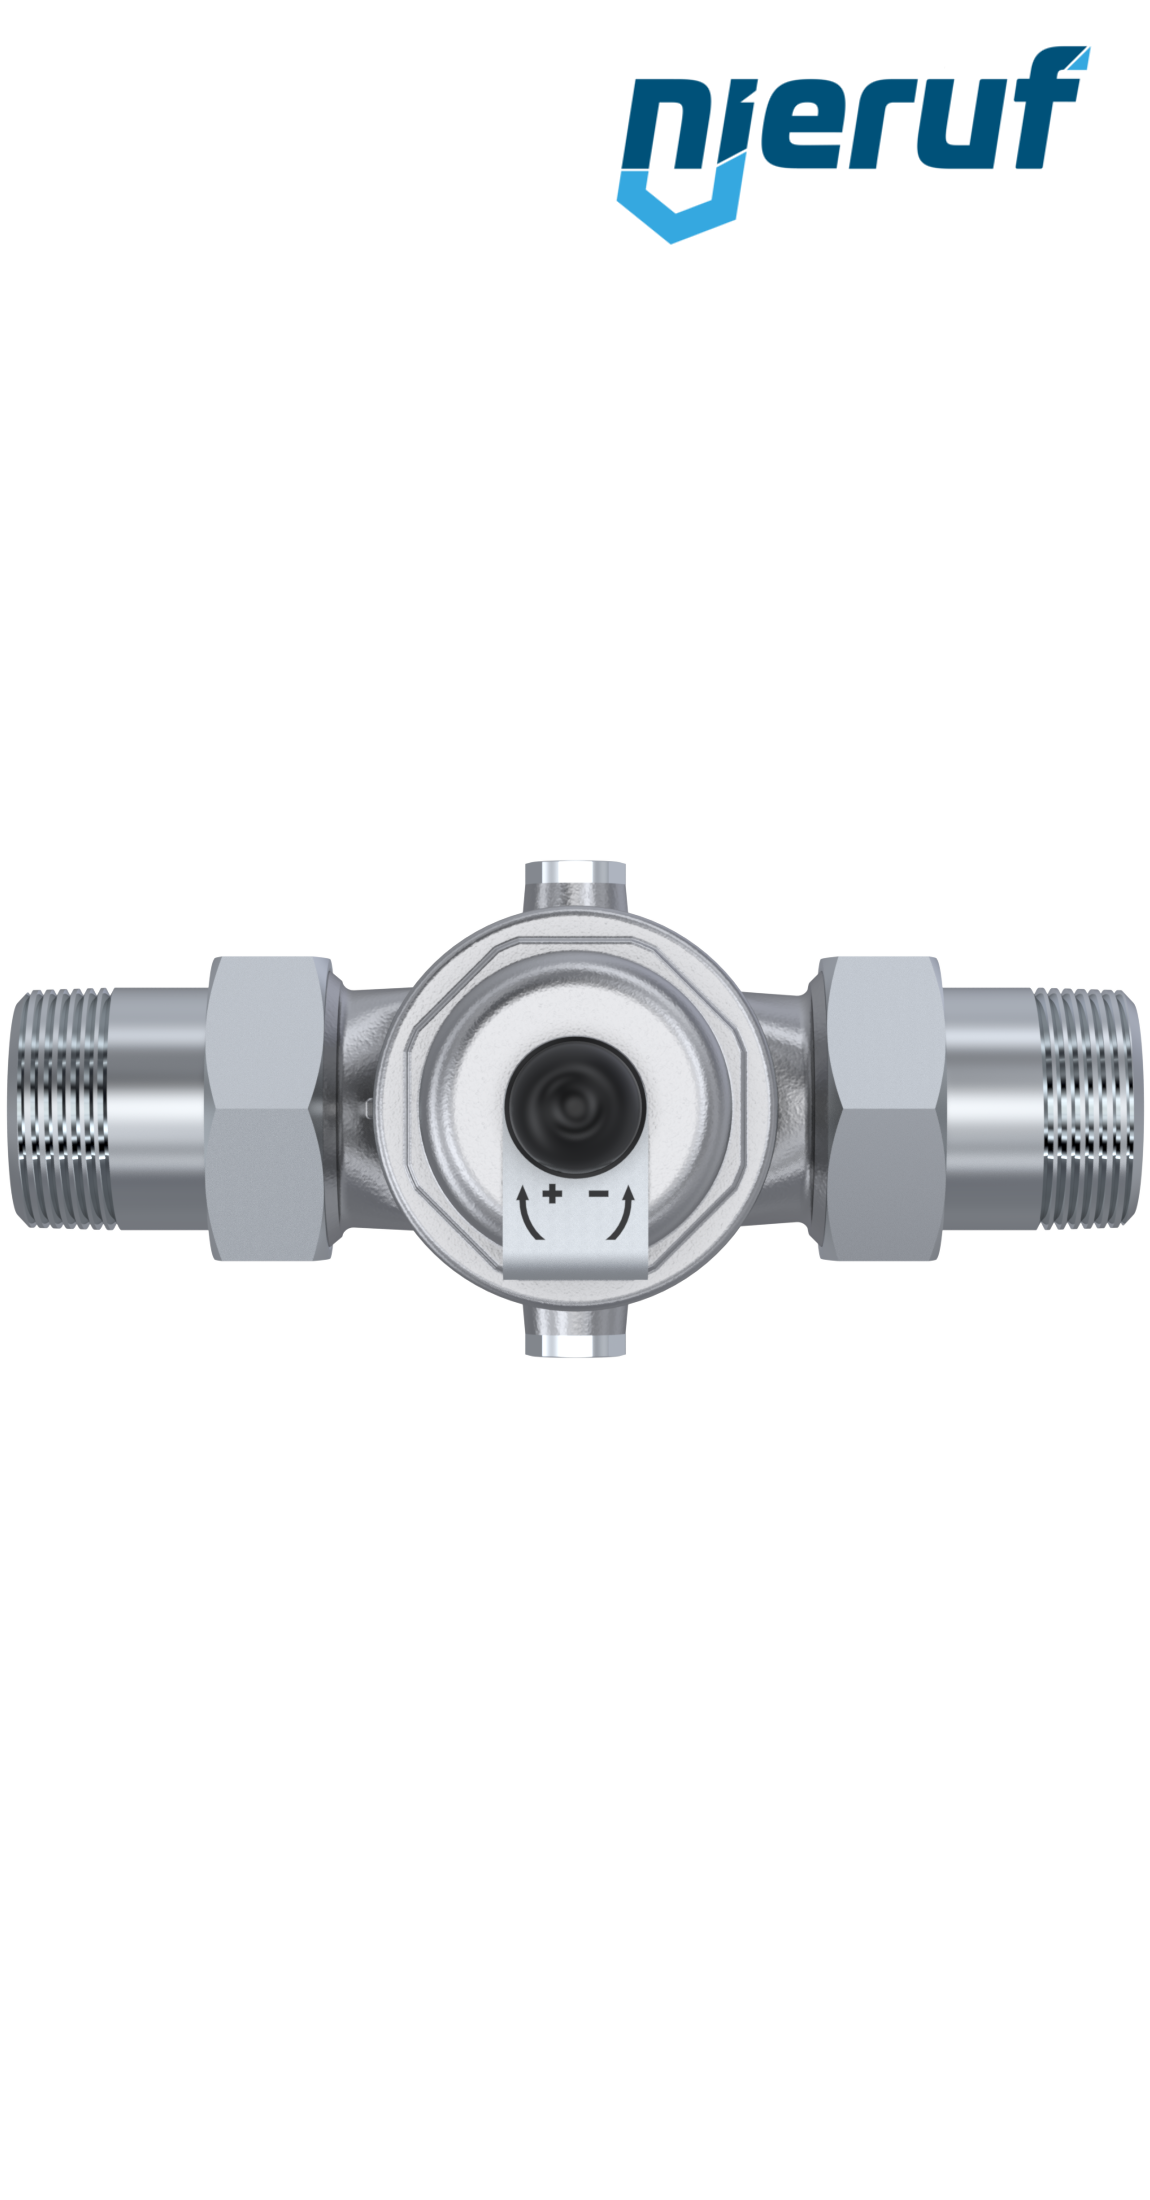 pressure reducing valve 2" inch male thread DM04 stainless steel FKM 5.0 - 15.0 bar